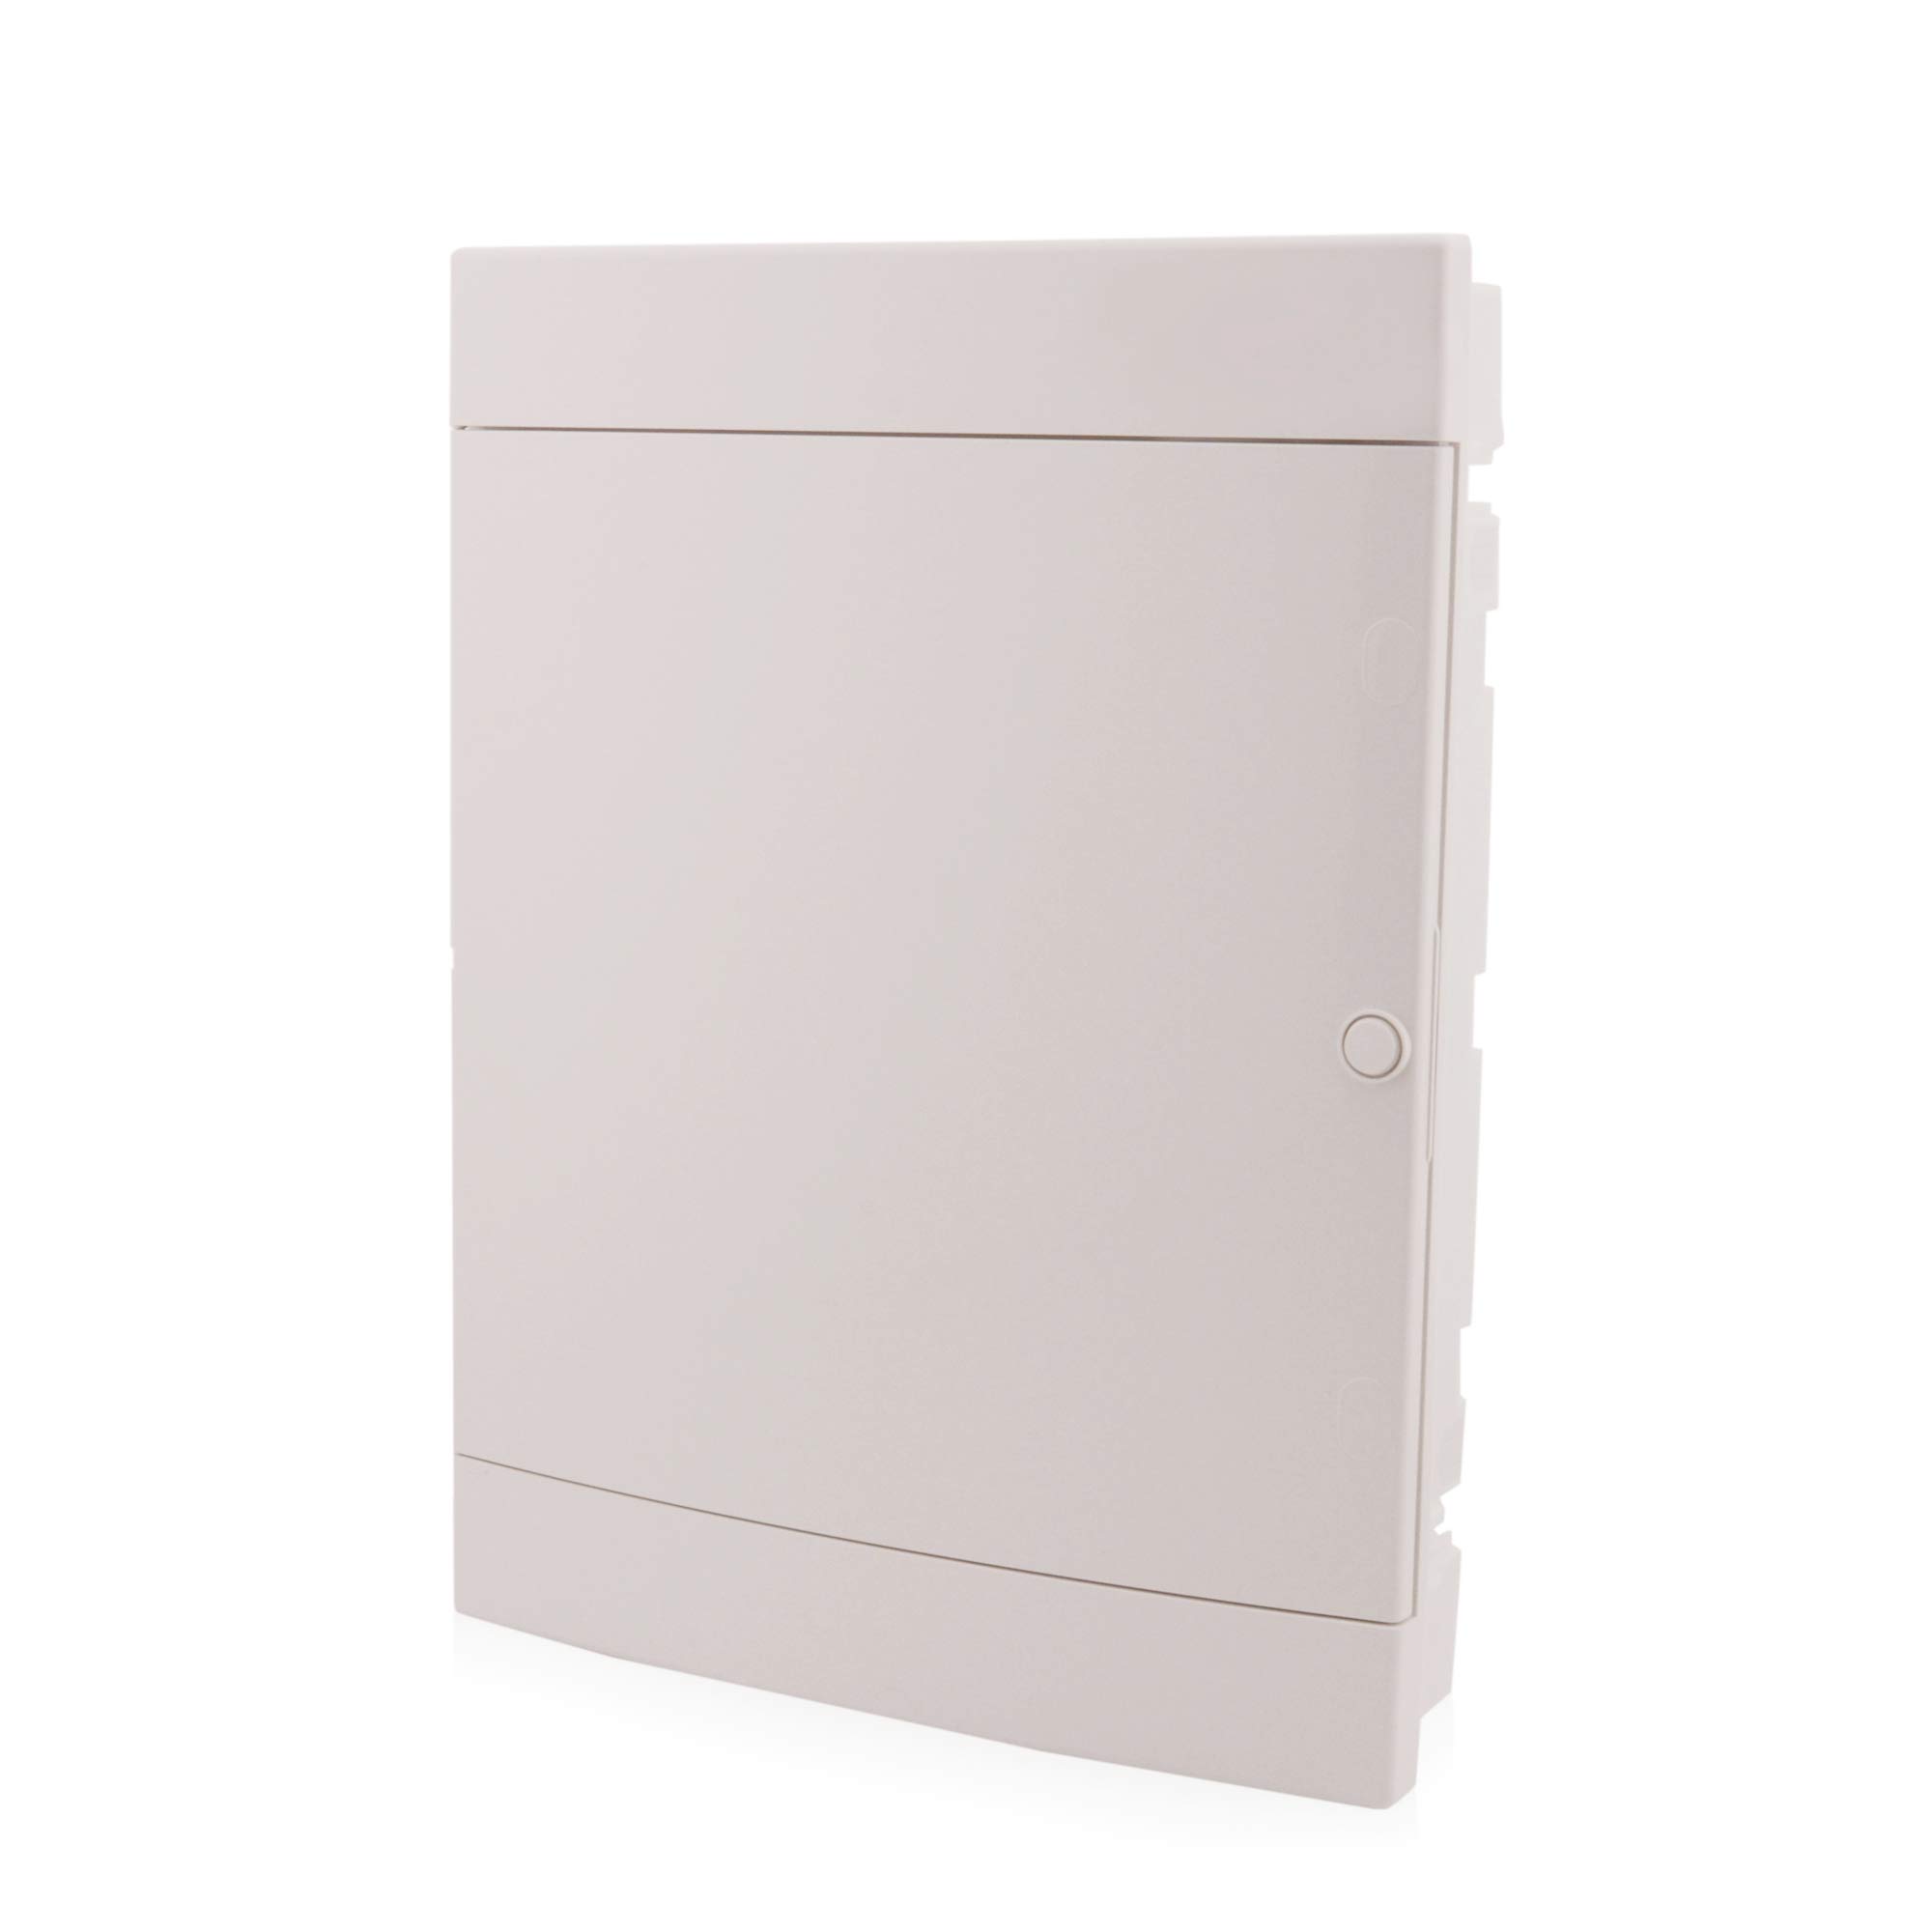 UP-Sicherungskasten 3-reihig für 54 Module Unterputz mit DIN Schiene weiße Tür IP40 für die Trockenraum Installation im Eigenheim